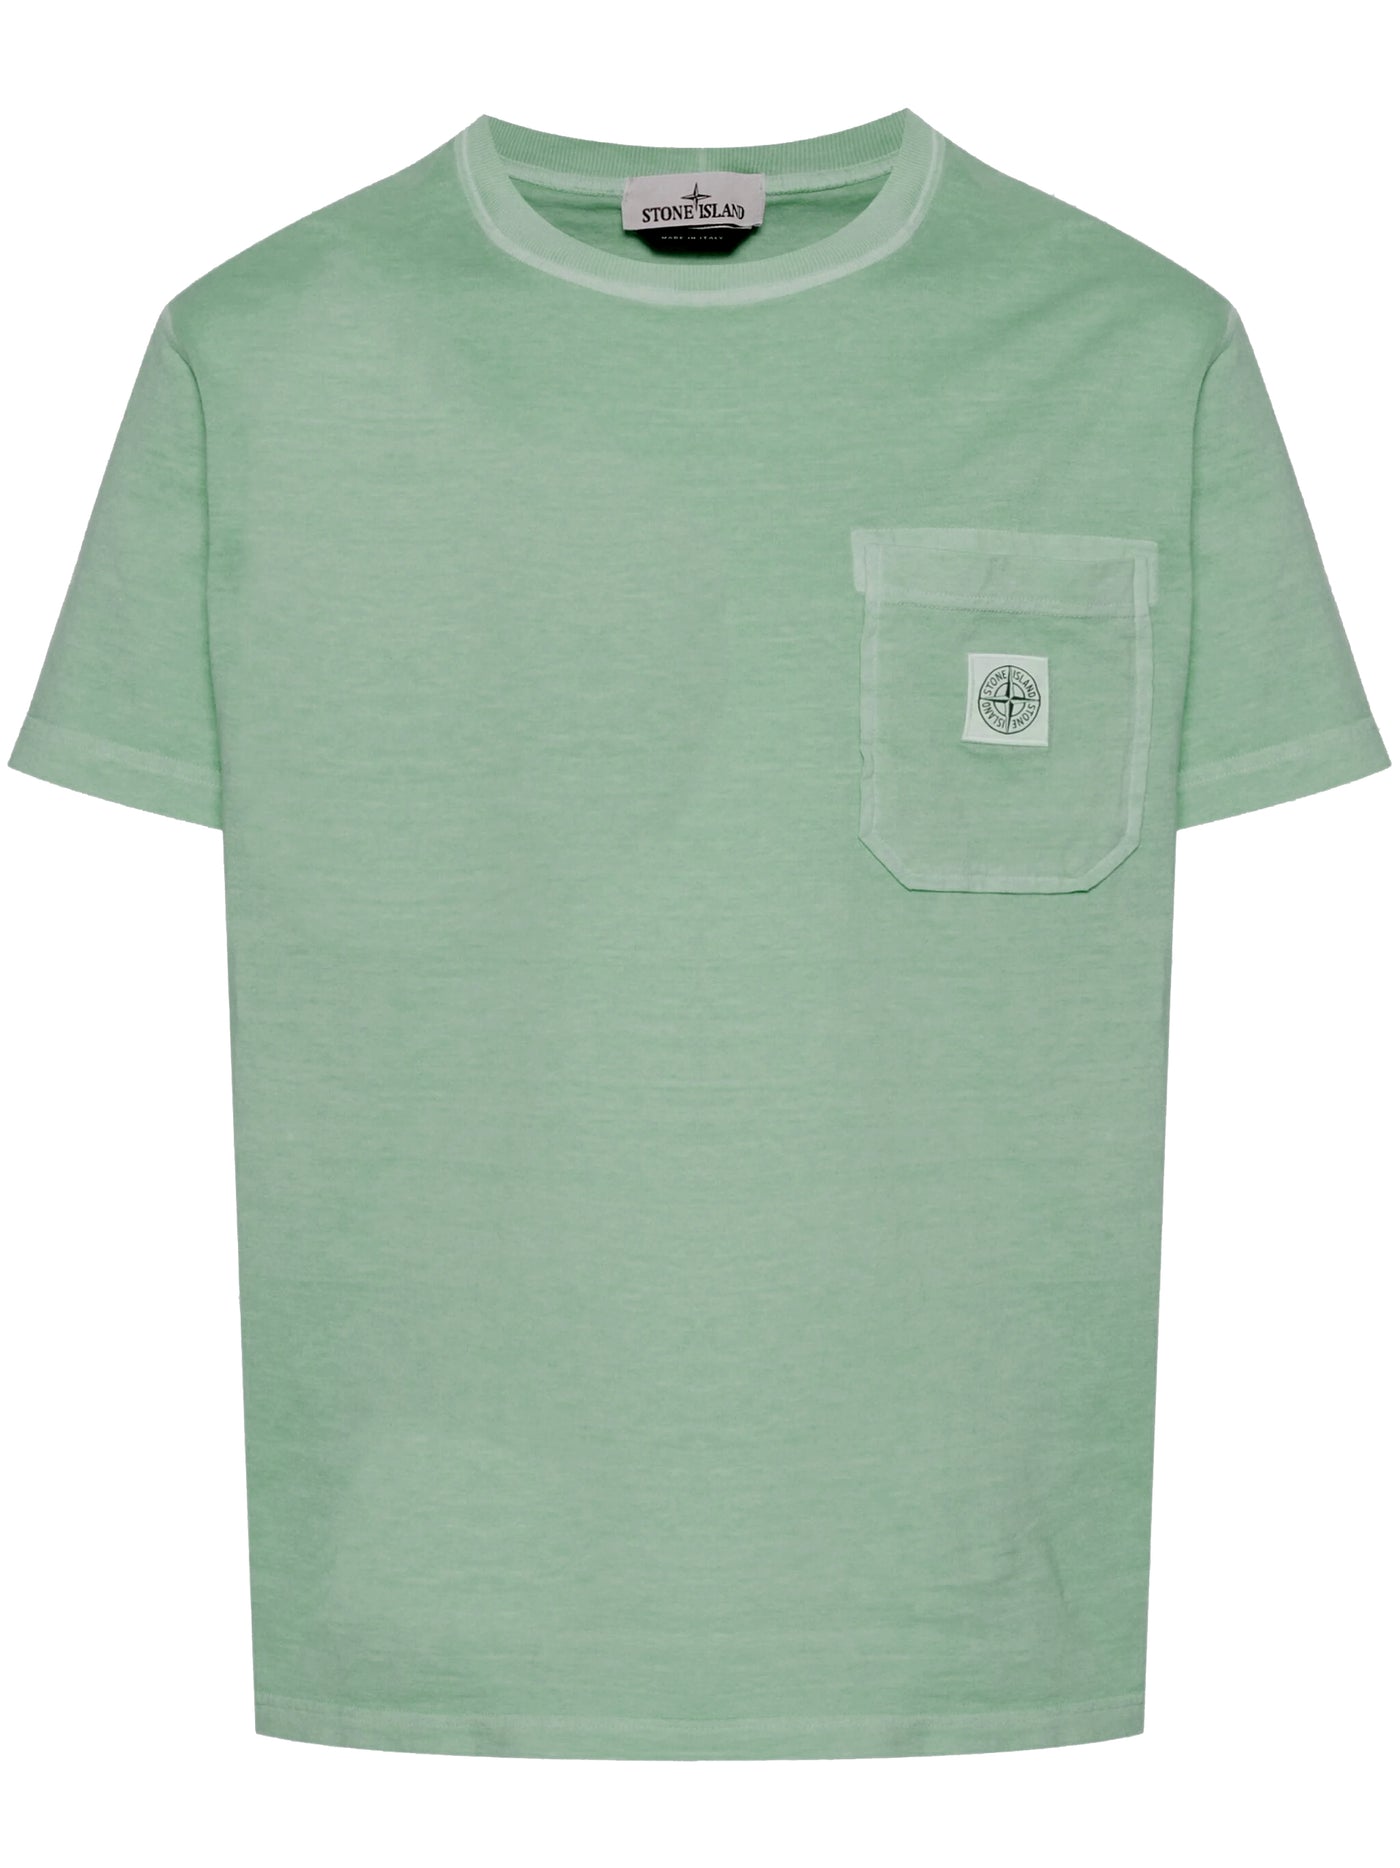 STONE ISLAND - Tee Shirt délavé à poche vert